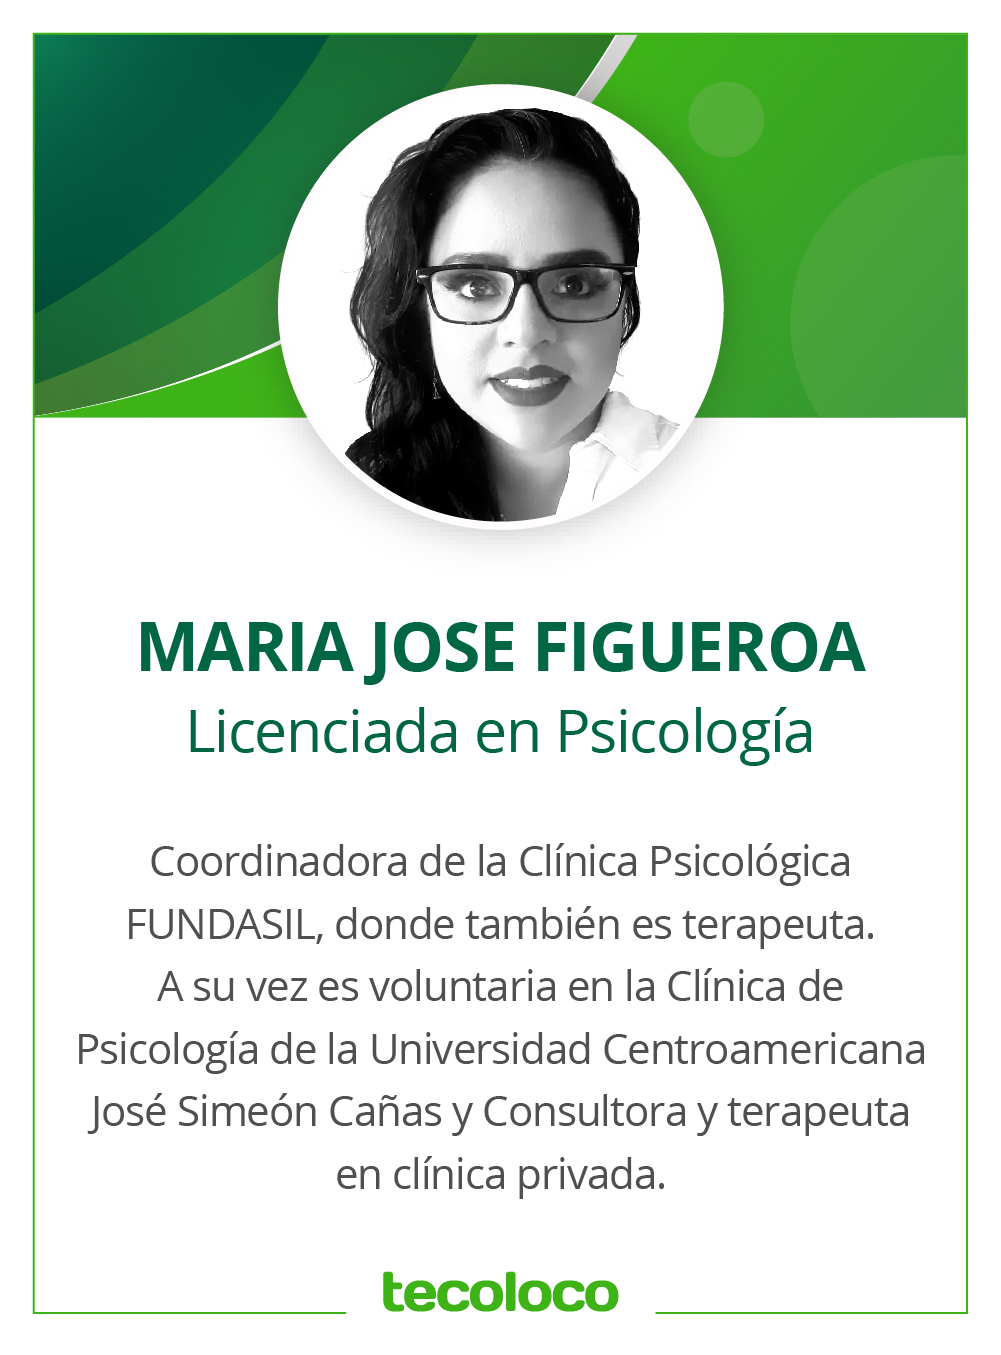 Maria Jose Figueroa Fundasil